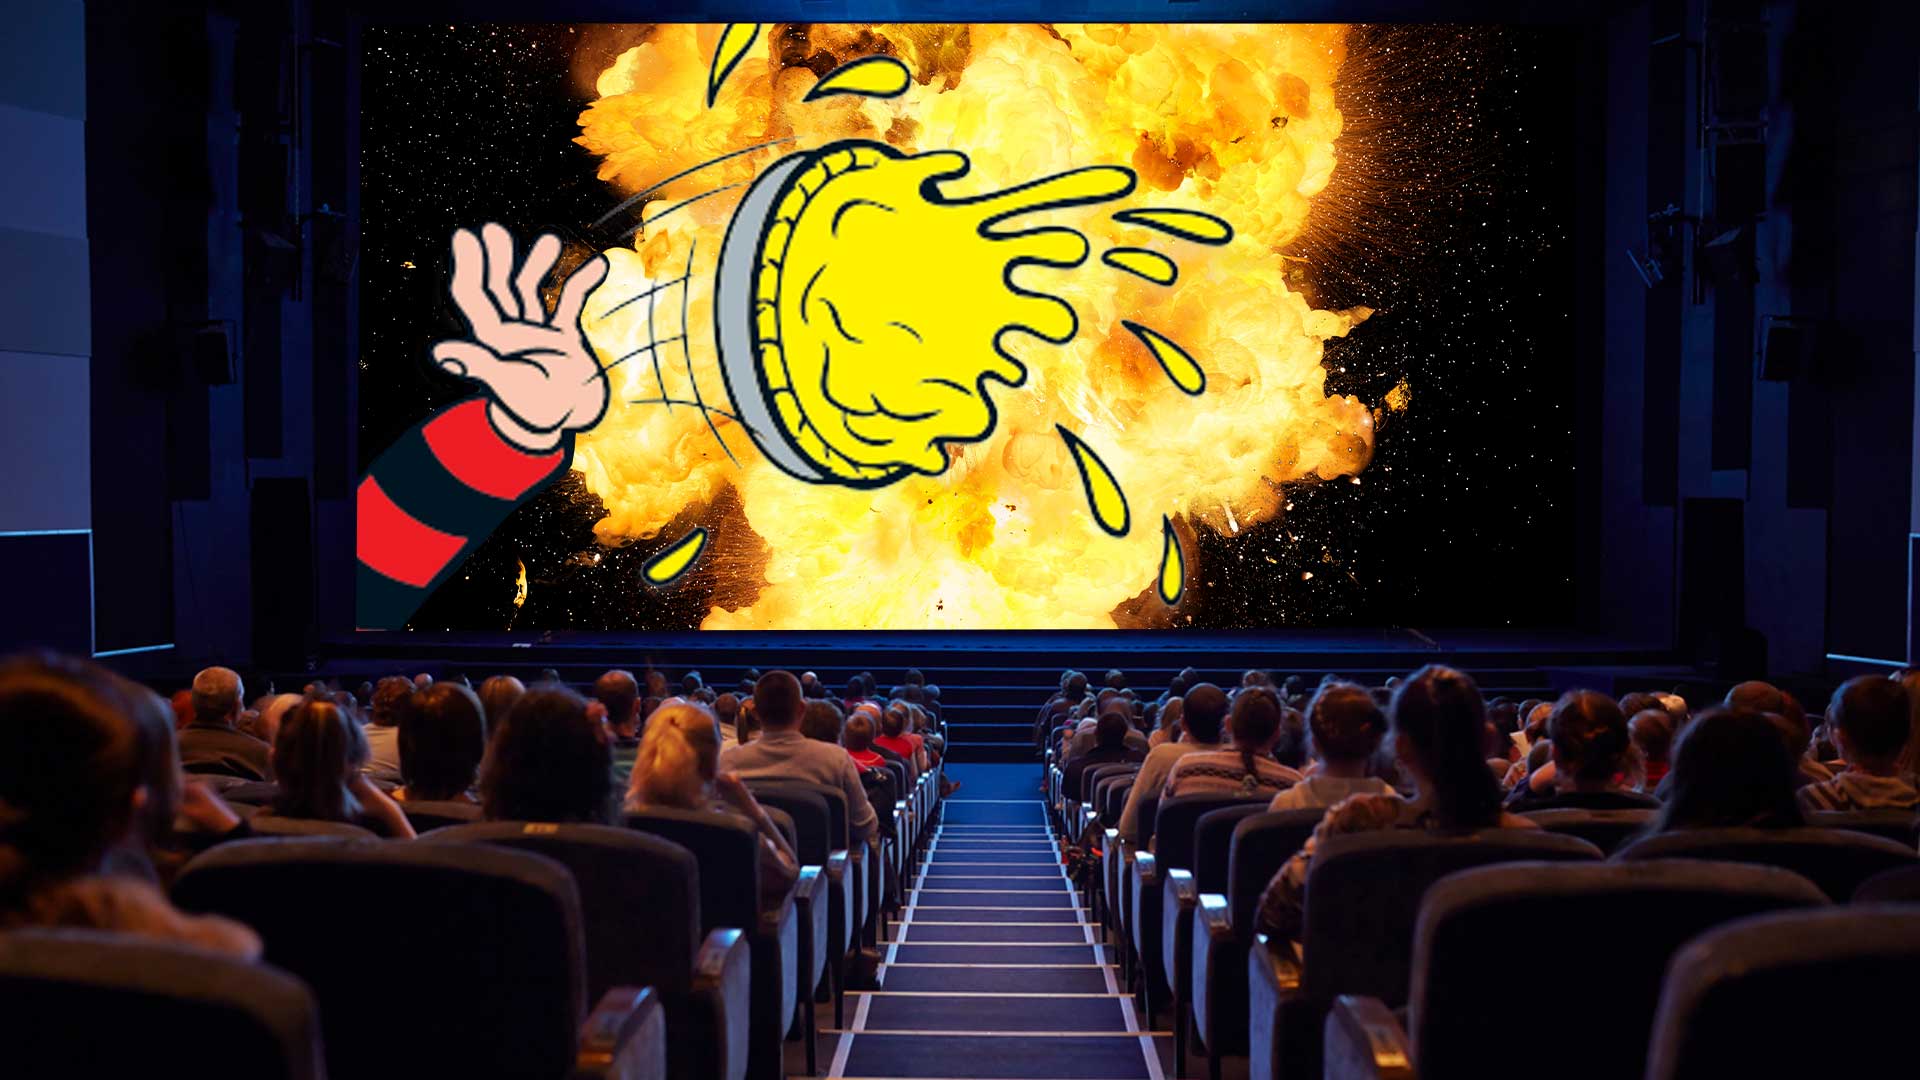 A cinema showing Pie Hard 